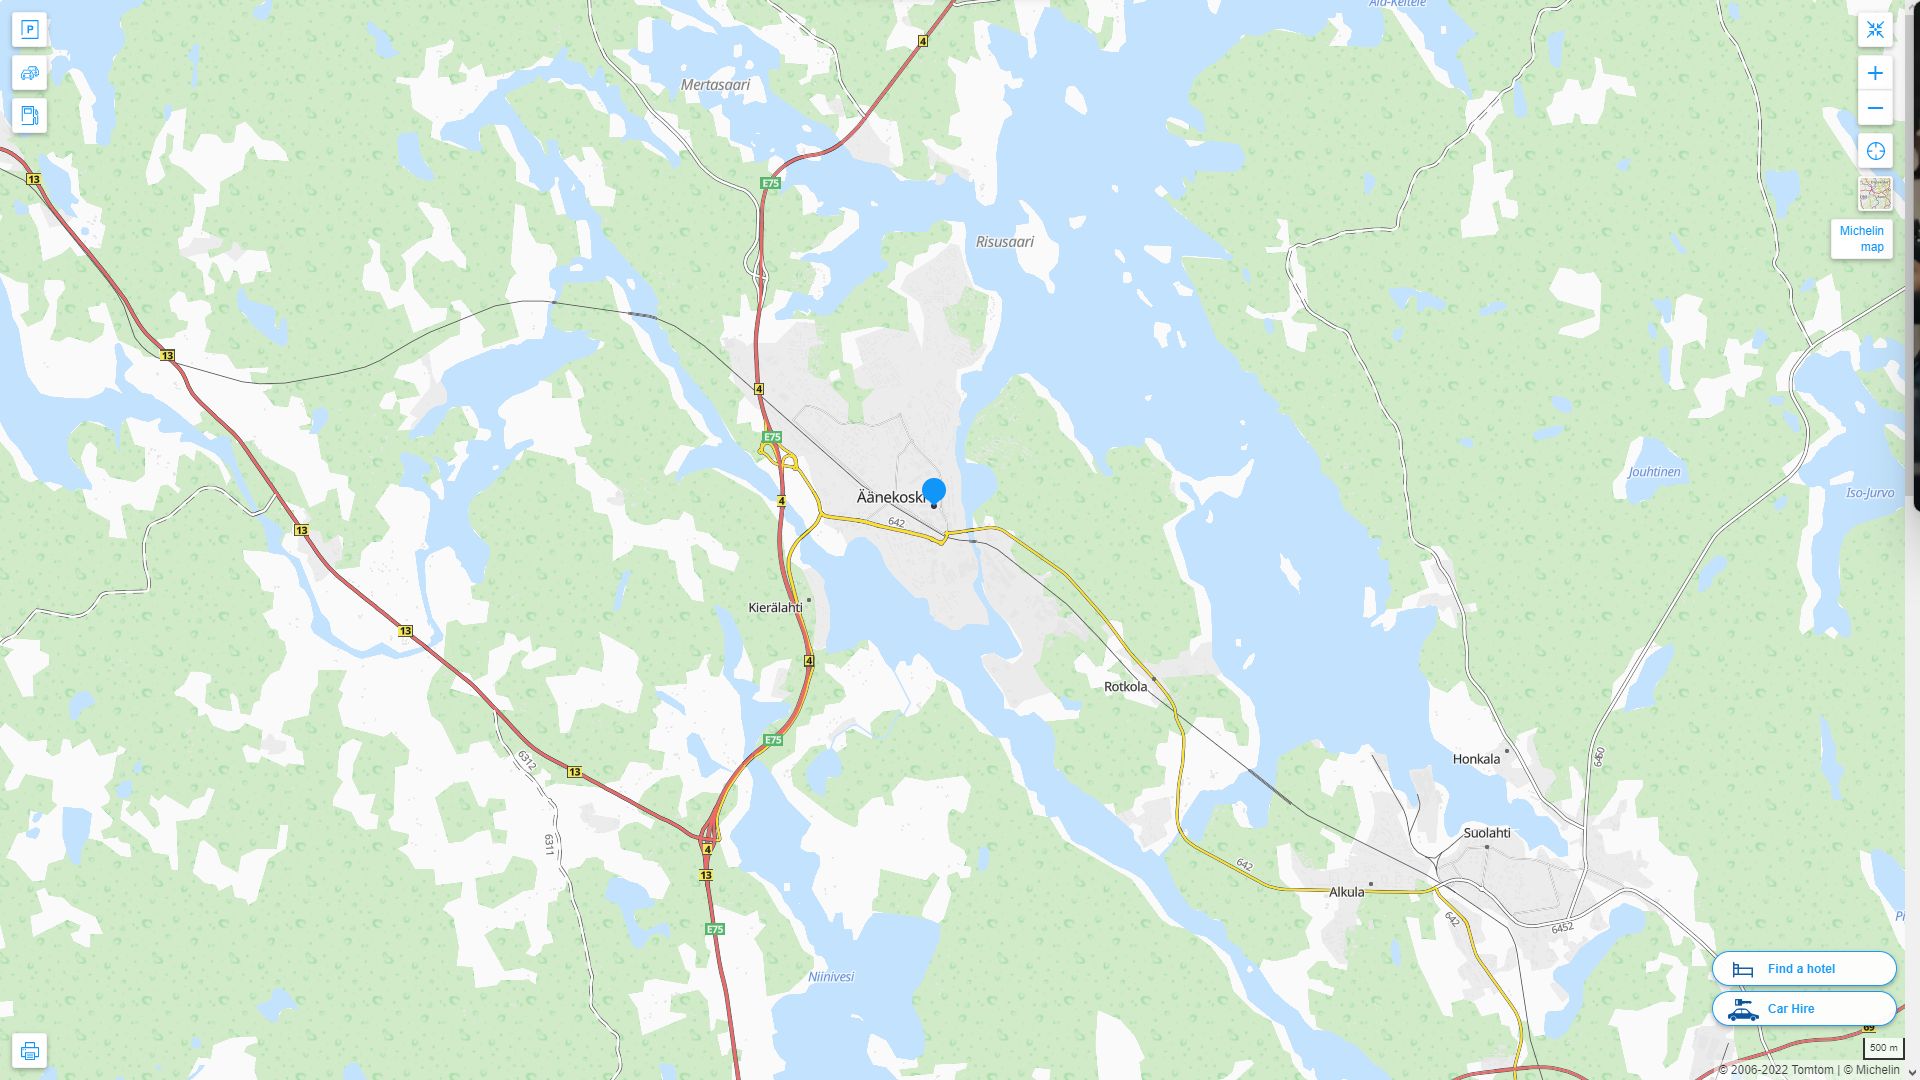 aanekoski Finlande Autoroute et carte routiere